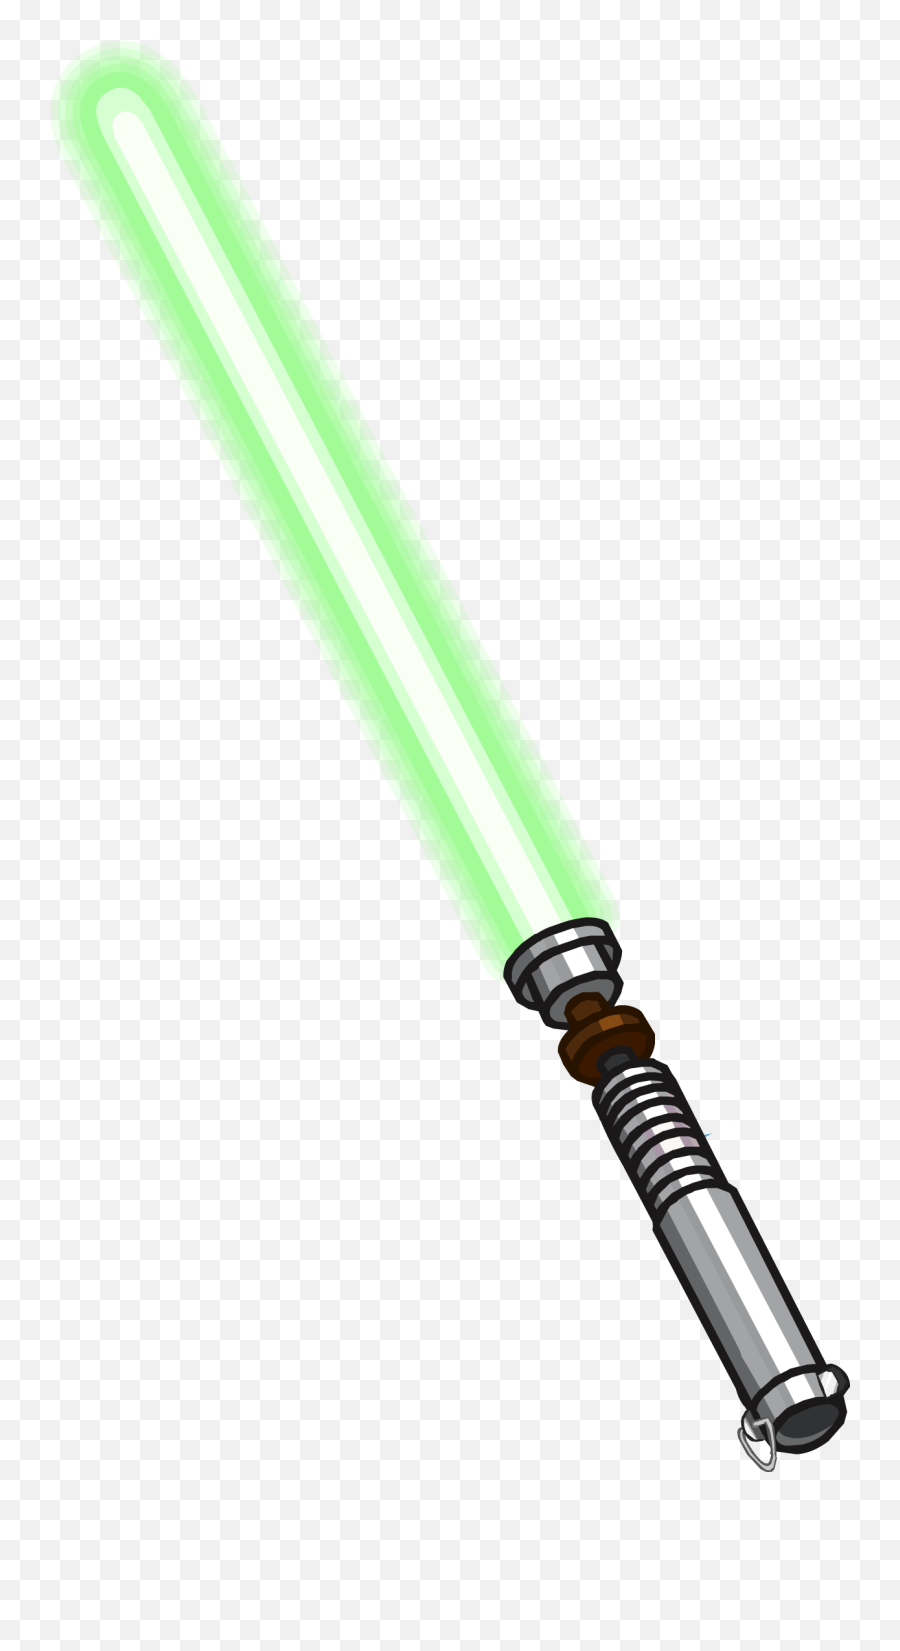 Lightsaber Emoji - Luke Skywalker Lightsaber Png,Lightsaber Emoticons